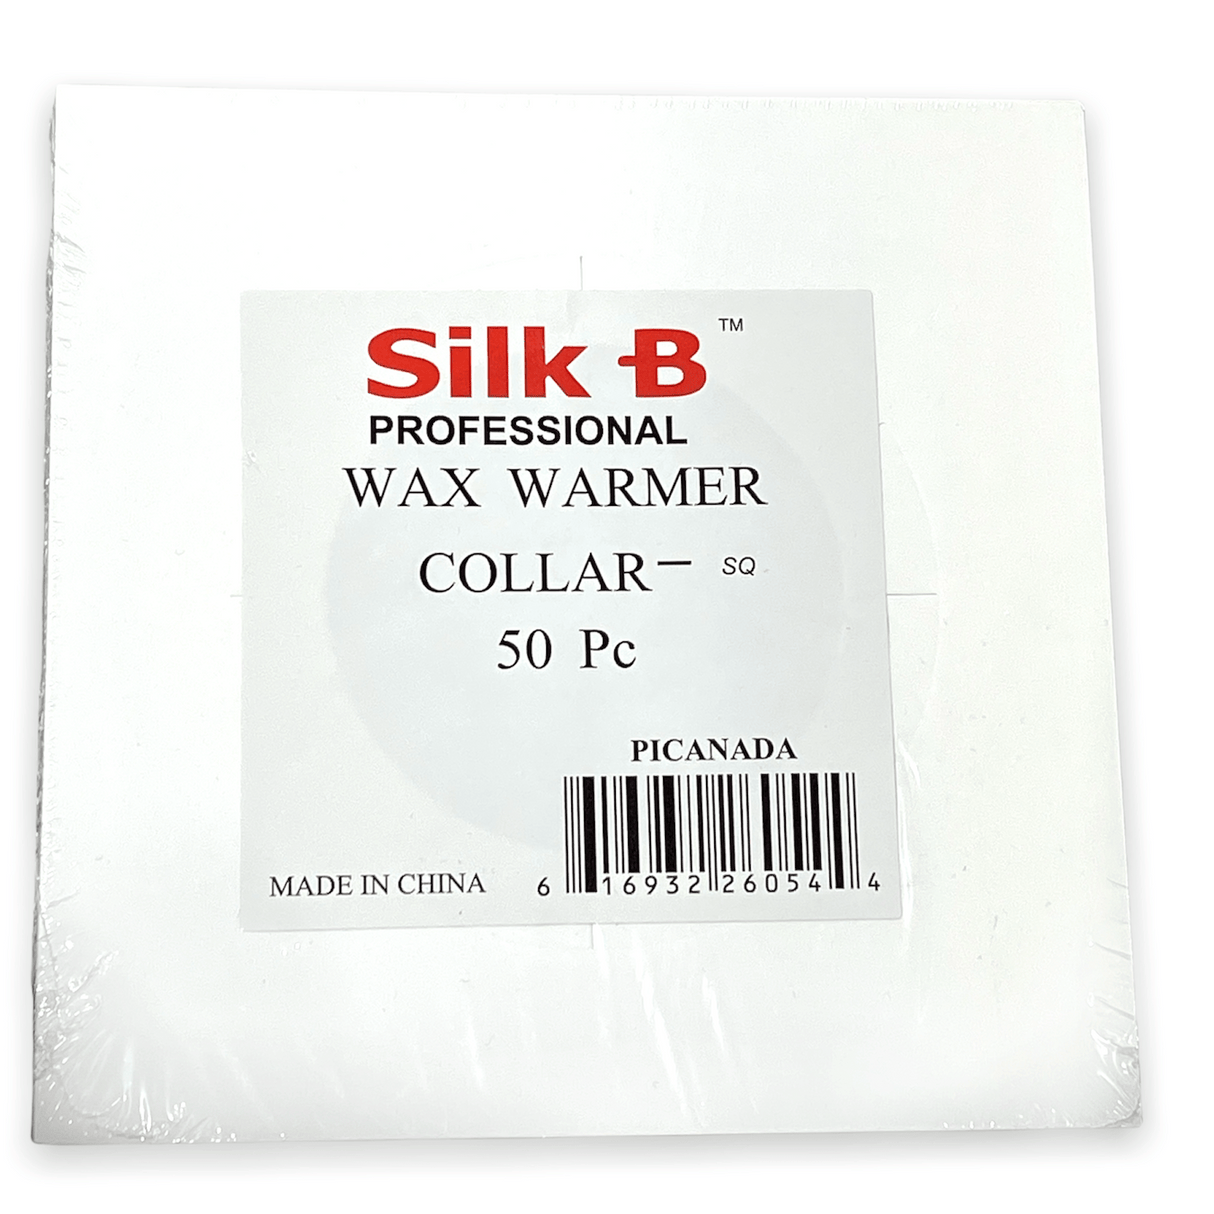 Silk B Wax Warmer Collar Square (Pack of 50pcs)